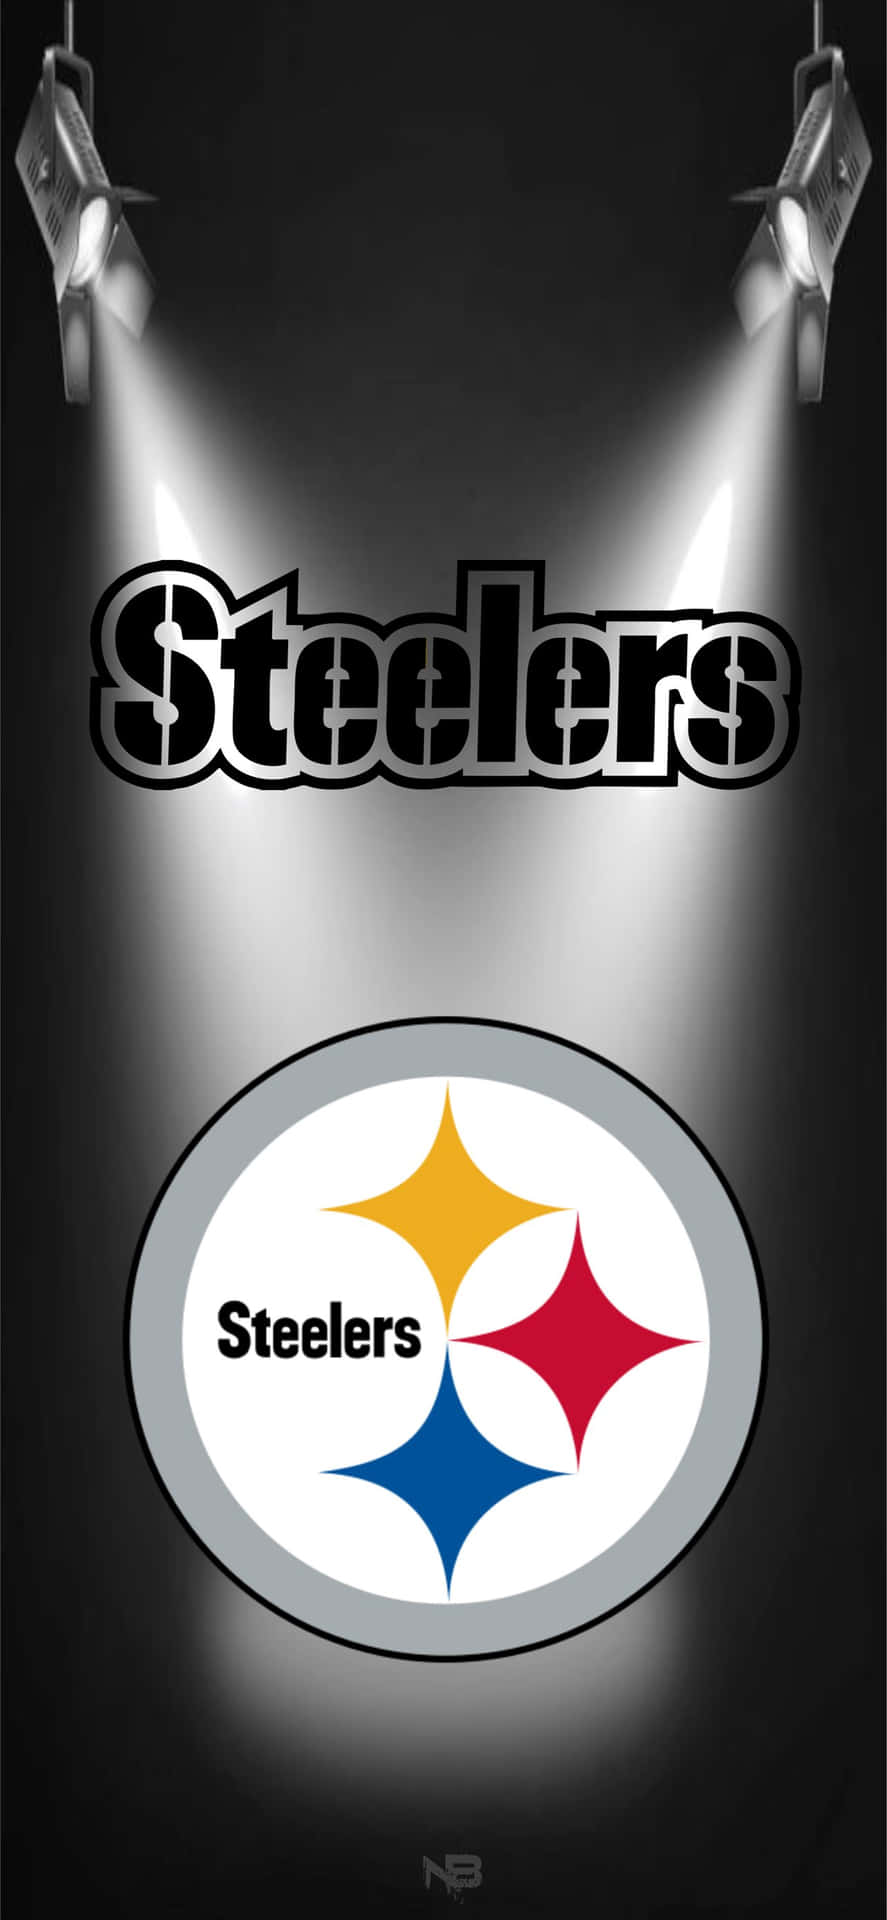 Pittsburg Steelers Logo på spotlys Wallpaper Wallpaper